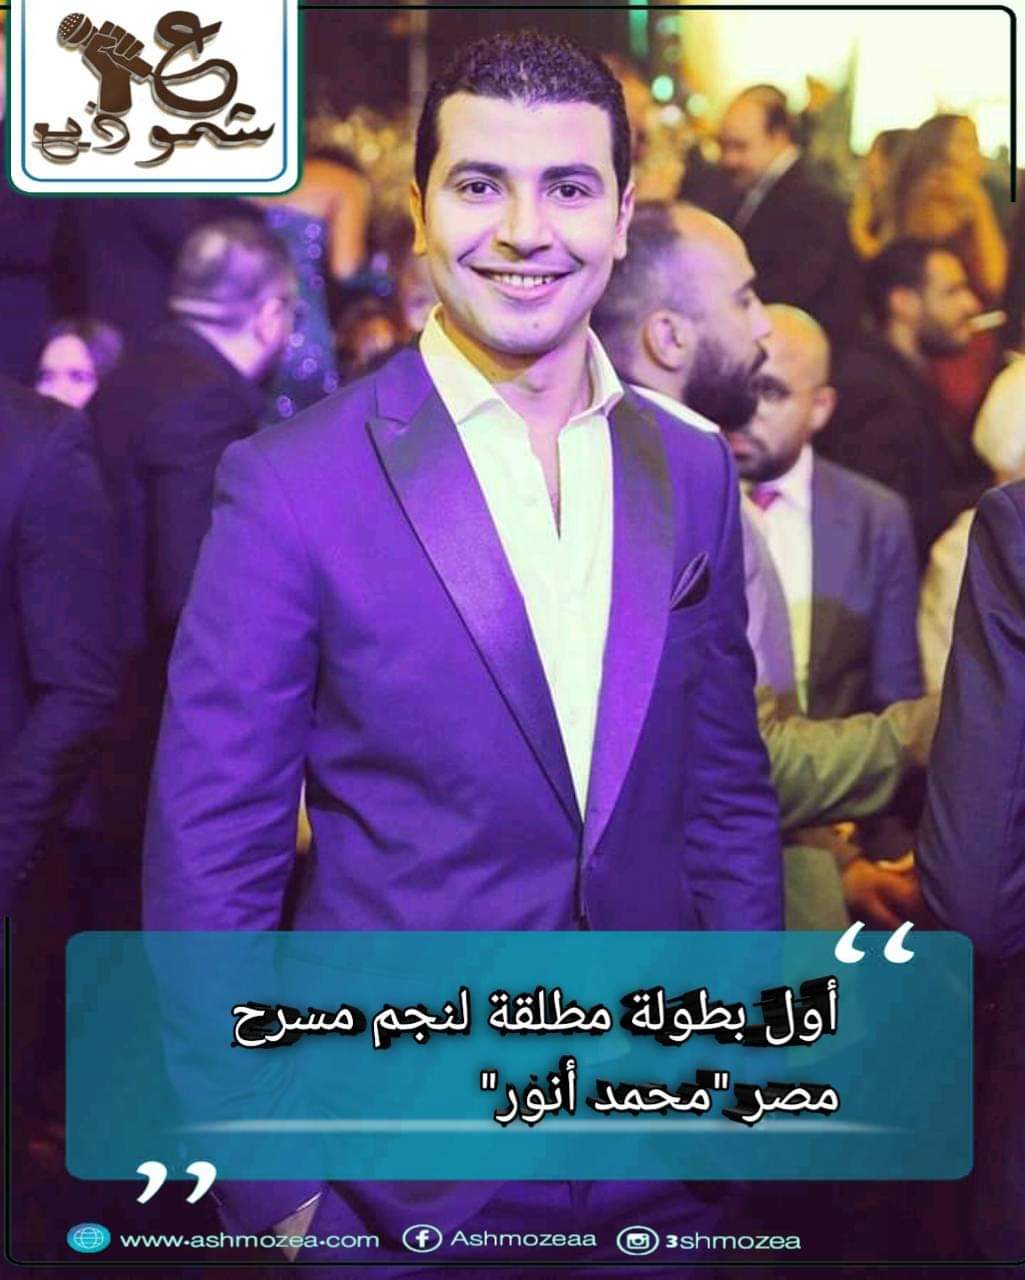 أول بطولة مطلقة لنجم مسرح مصر محمد أنور